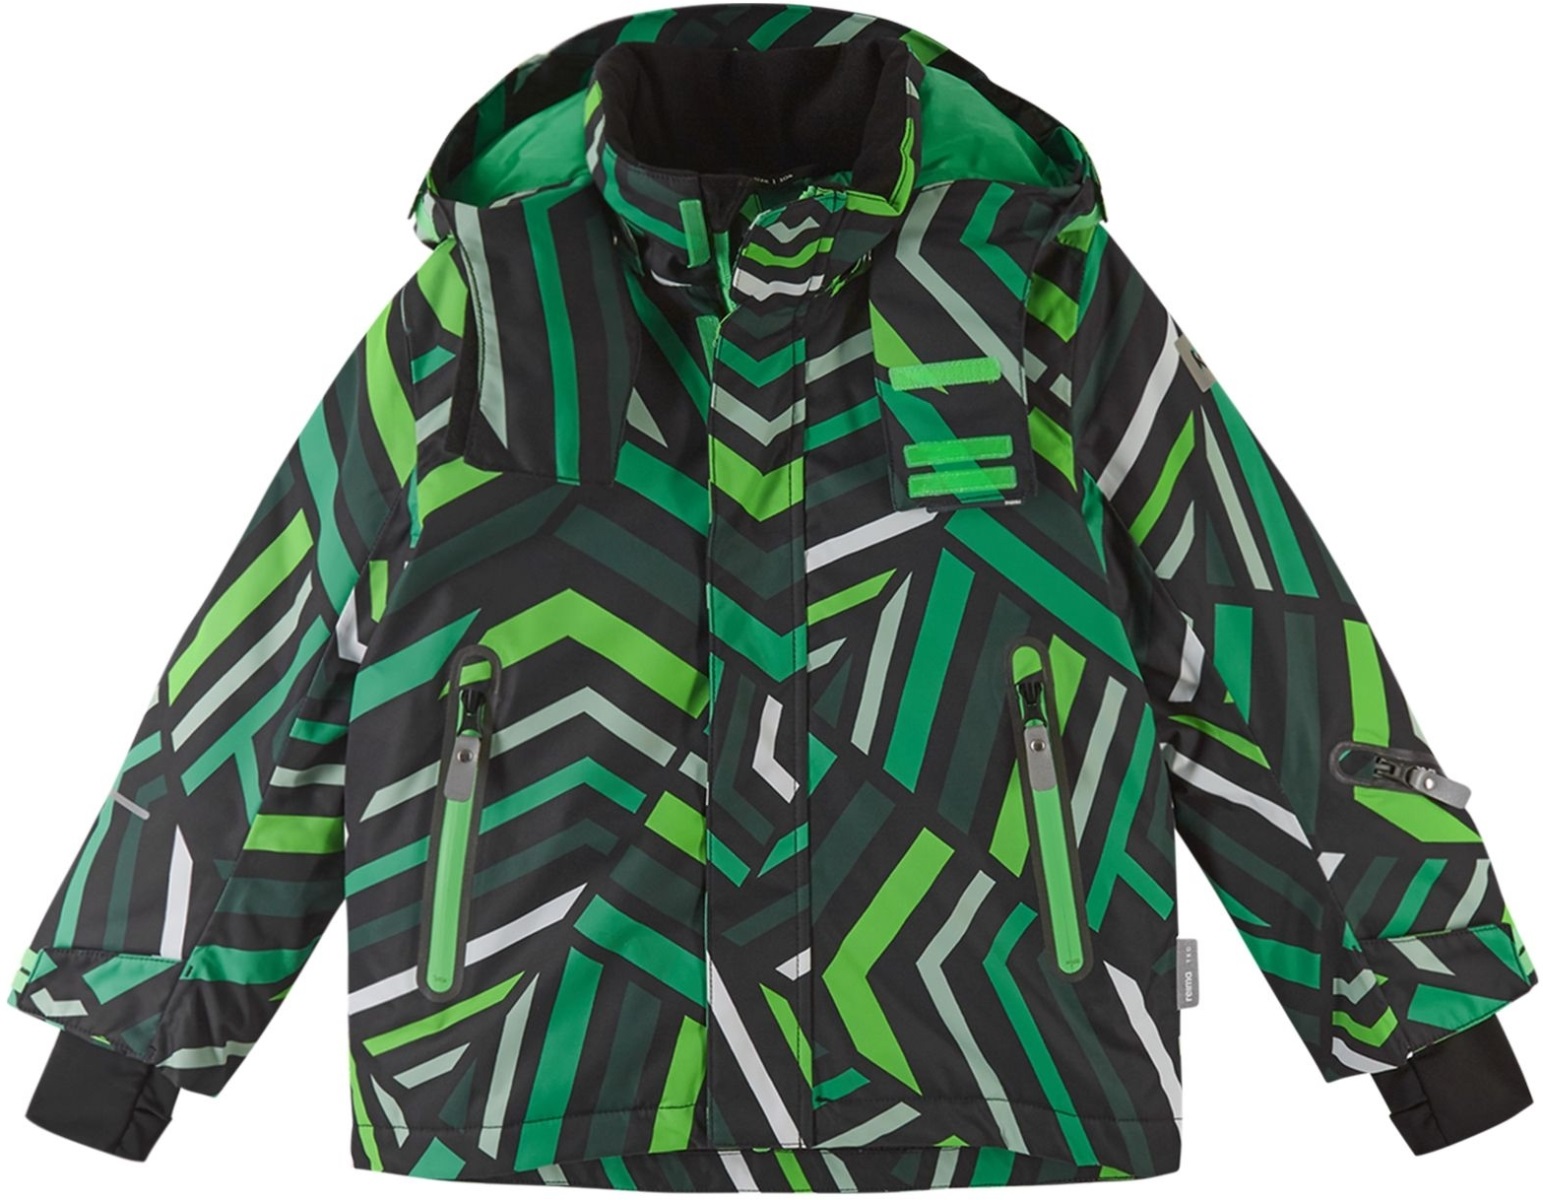 Chlapecká zimní lyžařská bunda reima kairala černá/zelená 104